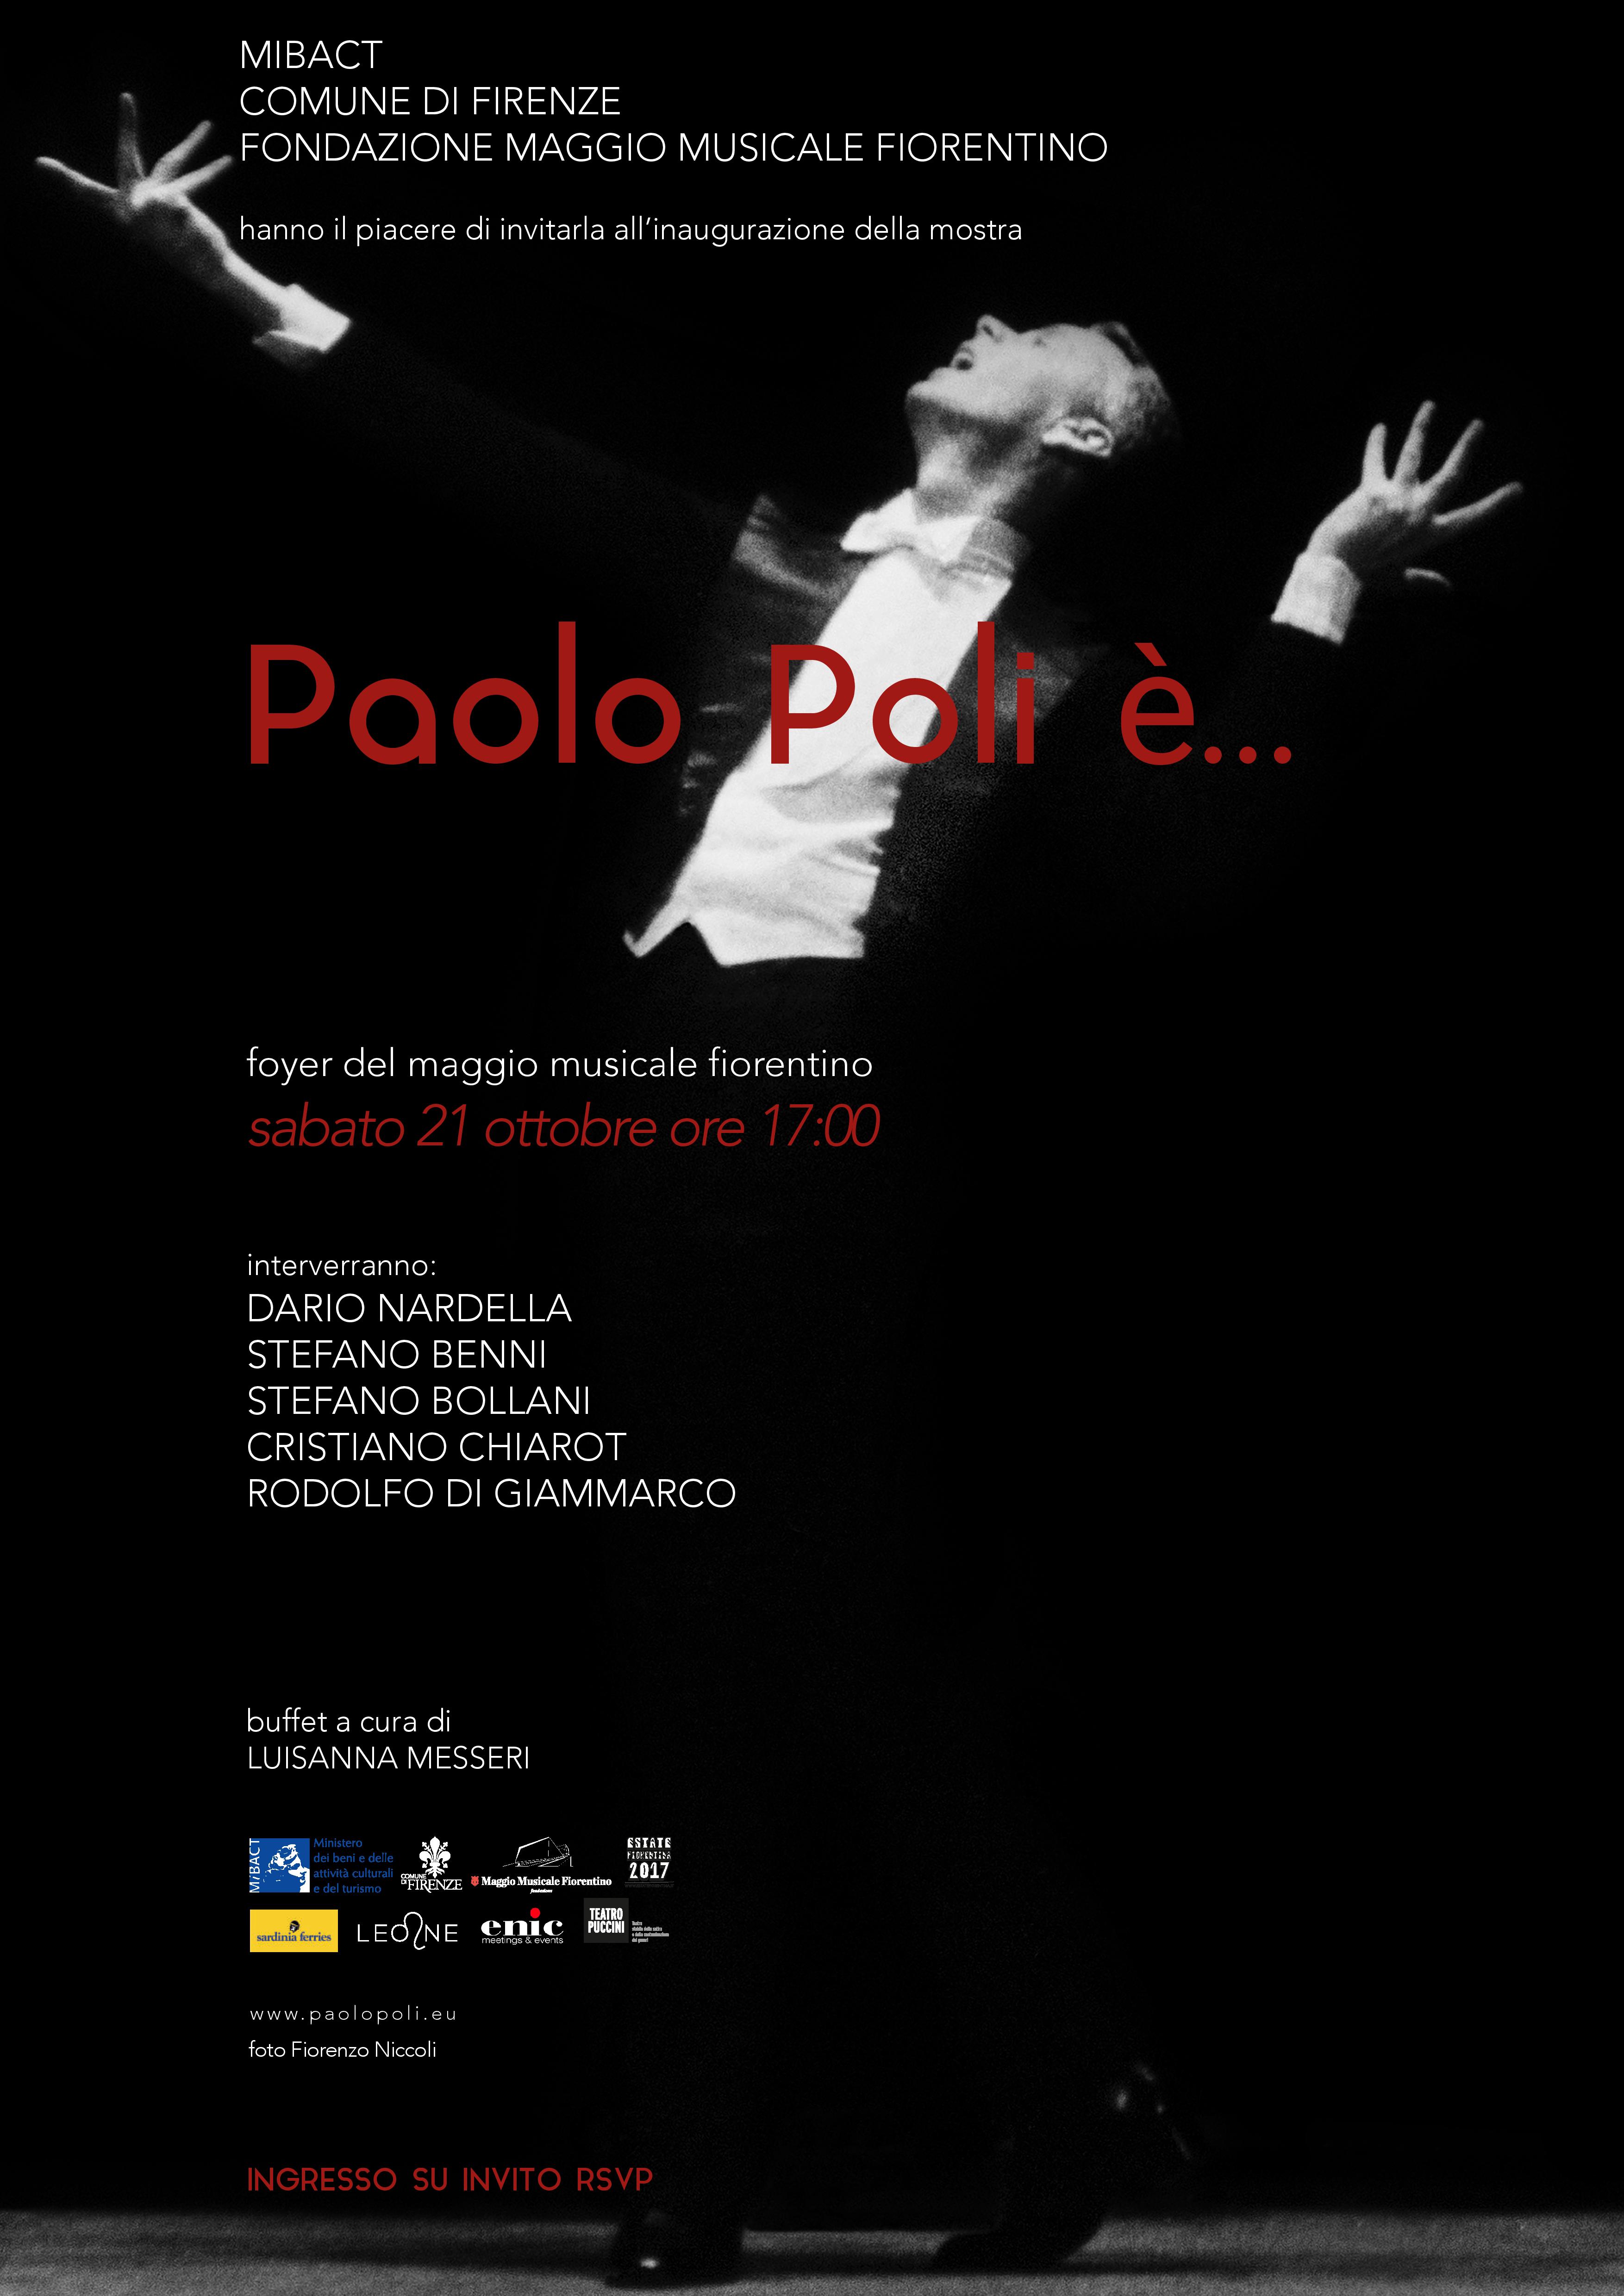 Firenze ricorda Paolo Poli, il suo genio, la sua storia e la sua arte al Maggio Musicale Fiorentino